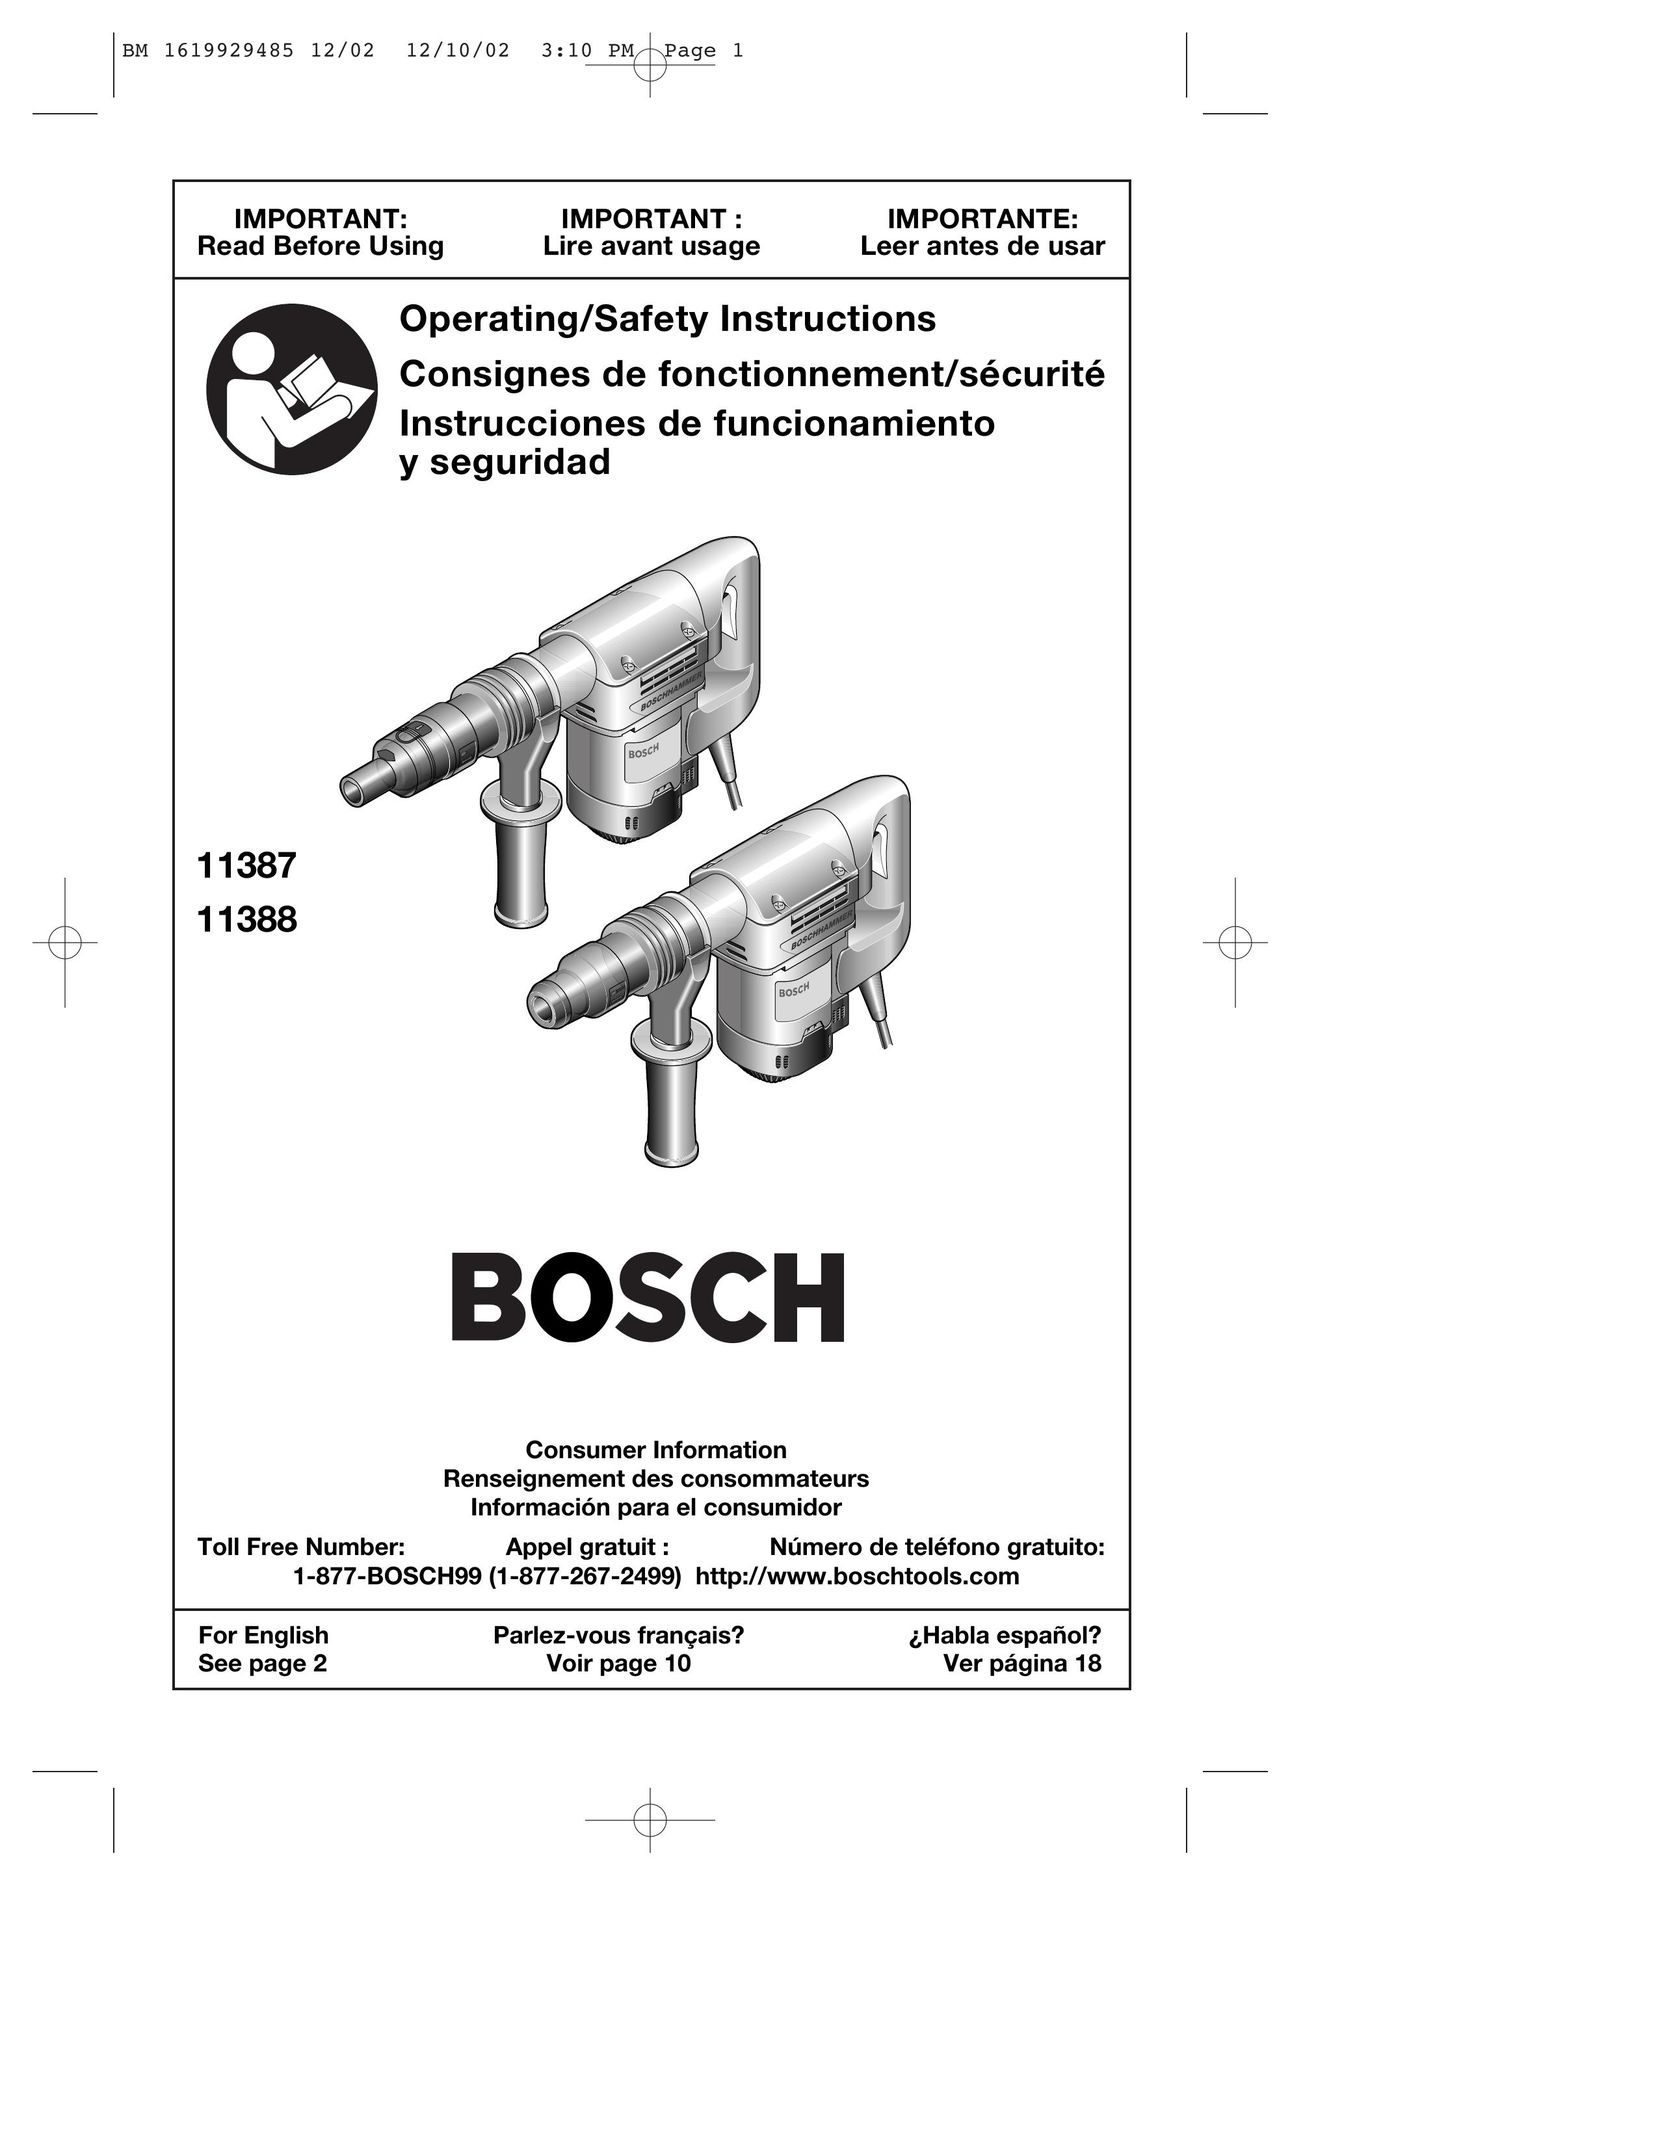 Bosch Power Tools 11387 Power Hammer User Manual